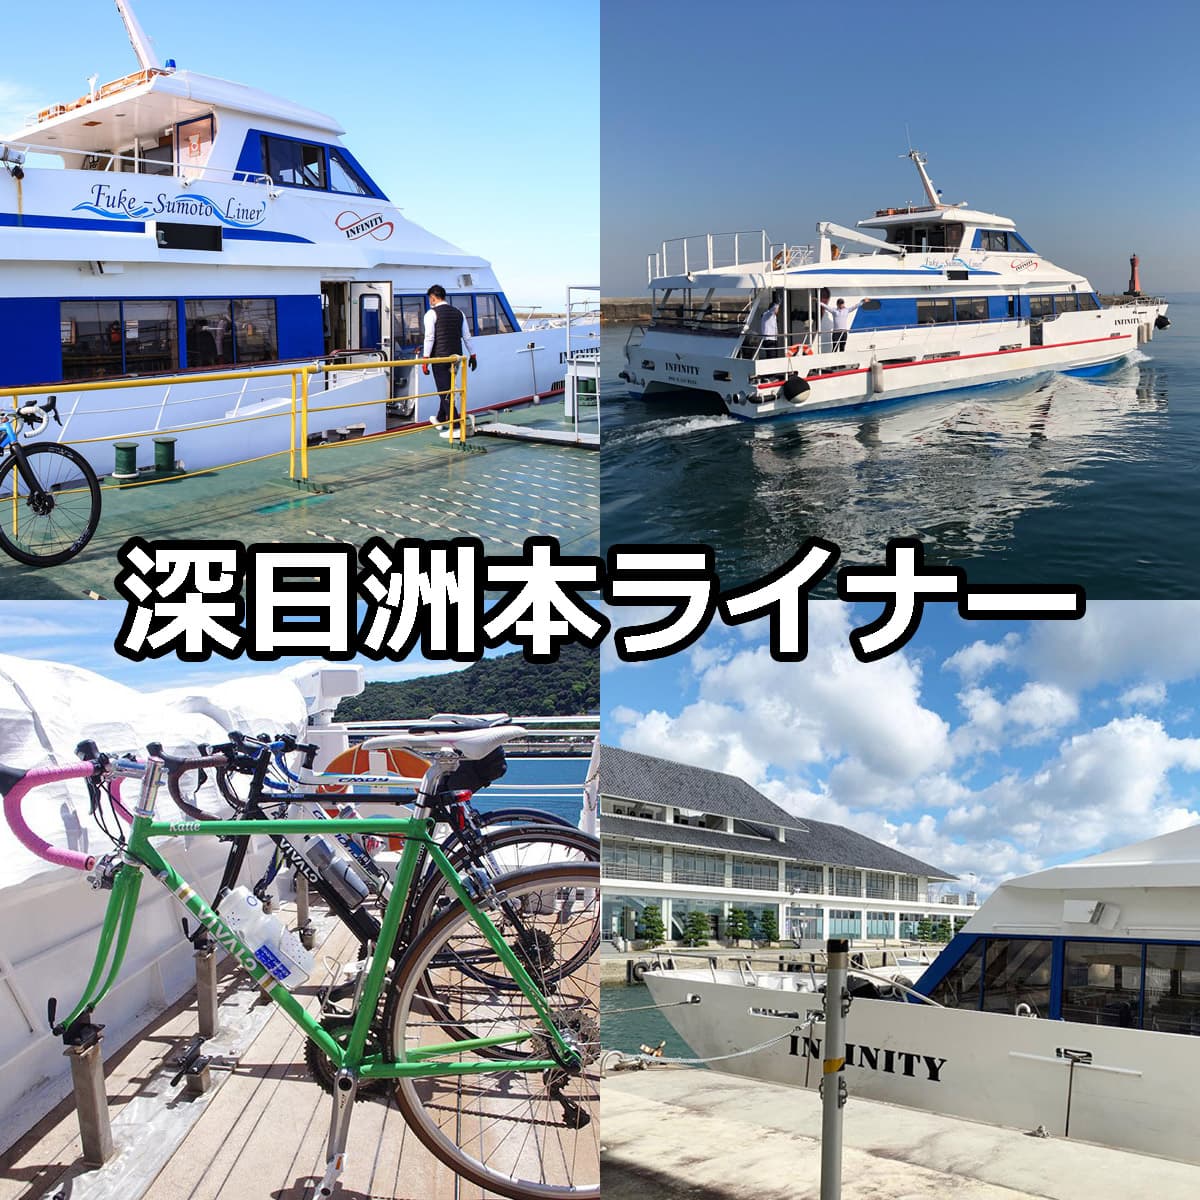 深日洲本ライナー 淡路島と大阪を結ぶ高速船フェリー